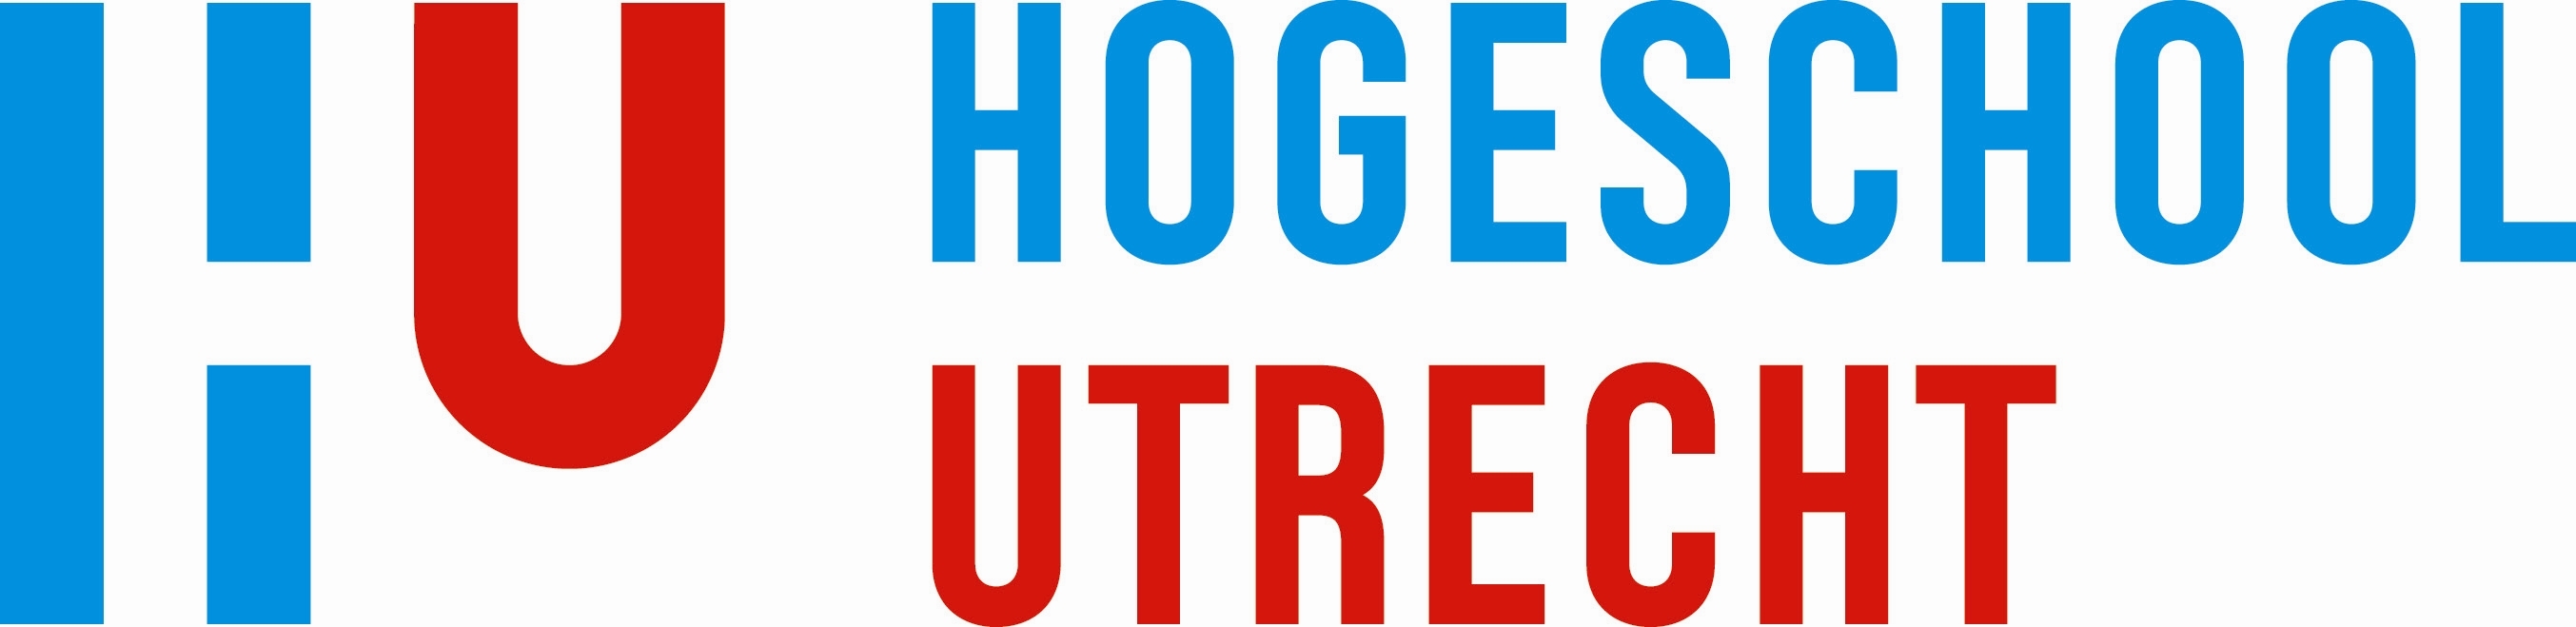 Hogeschool Utrecht Logo photo - 1